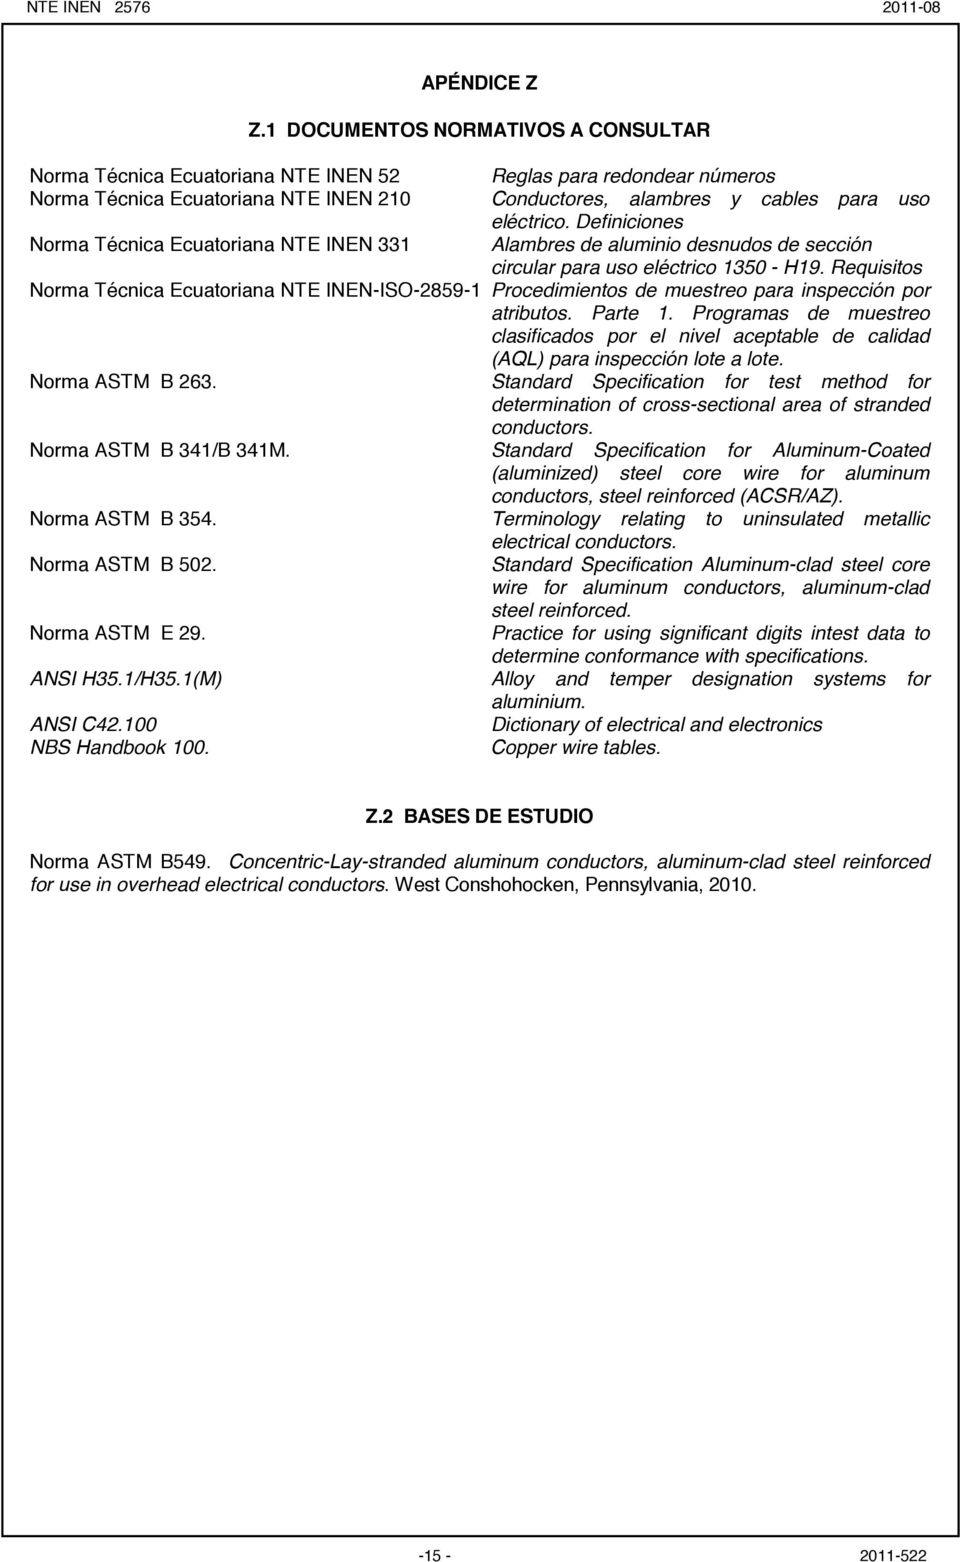 Definiciones Norma Técnica Ecuatoriana NTE INEN Alambres de aluminio desnudos de sección circular para uso eléctrico 0 - H9.